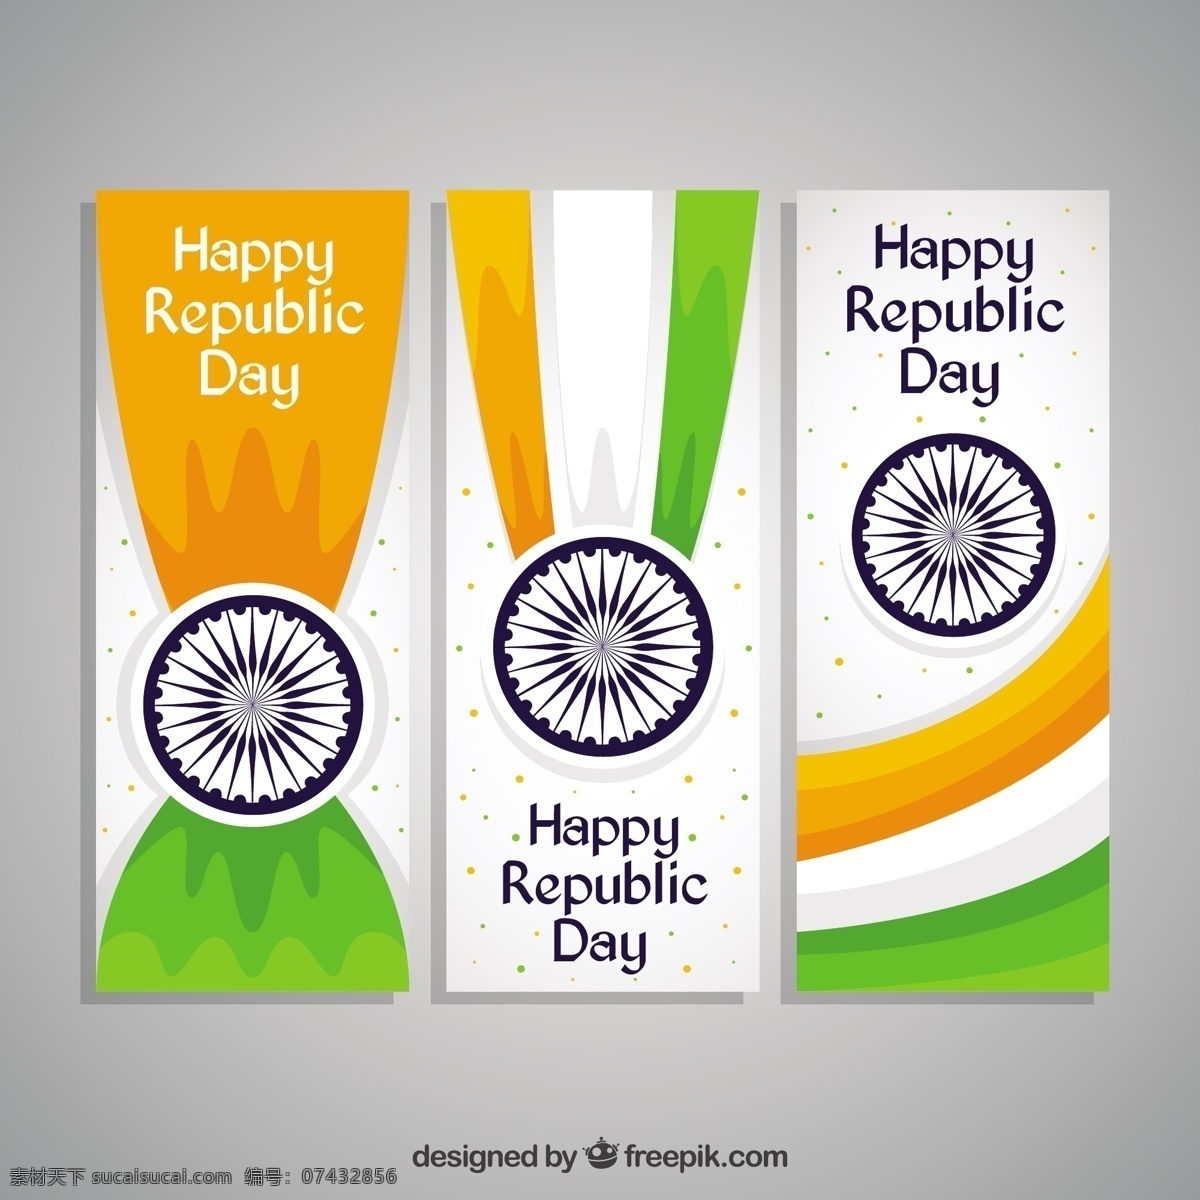 快乐 天 印度 横幅 旗帜 节日 和平 印度国旗 节日快乐 独立日 国家 自由 日 爱国 一月 独立 脉轮 民主 白色